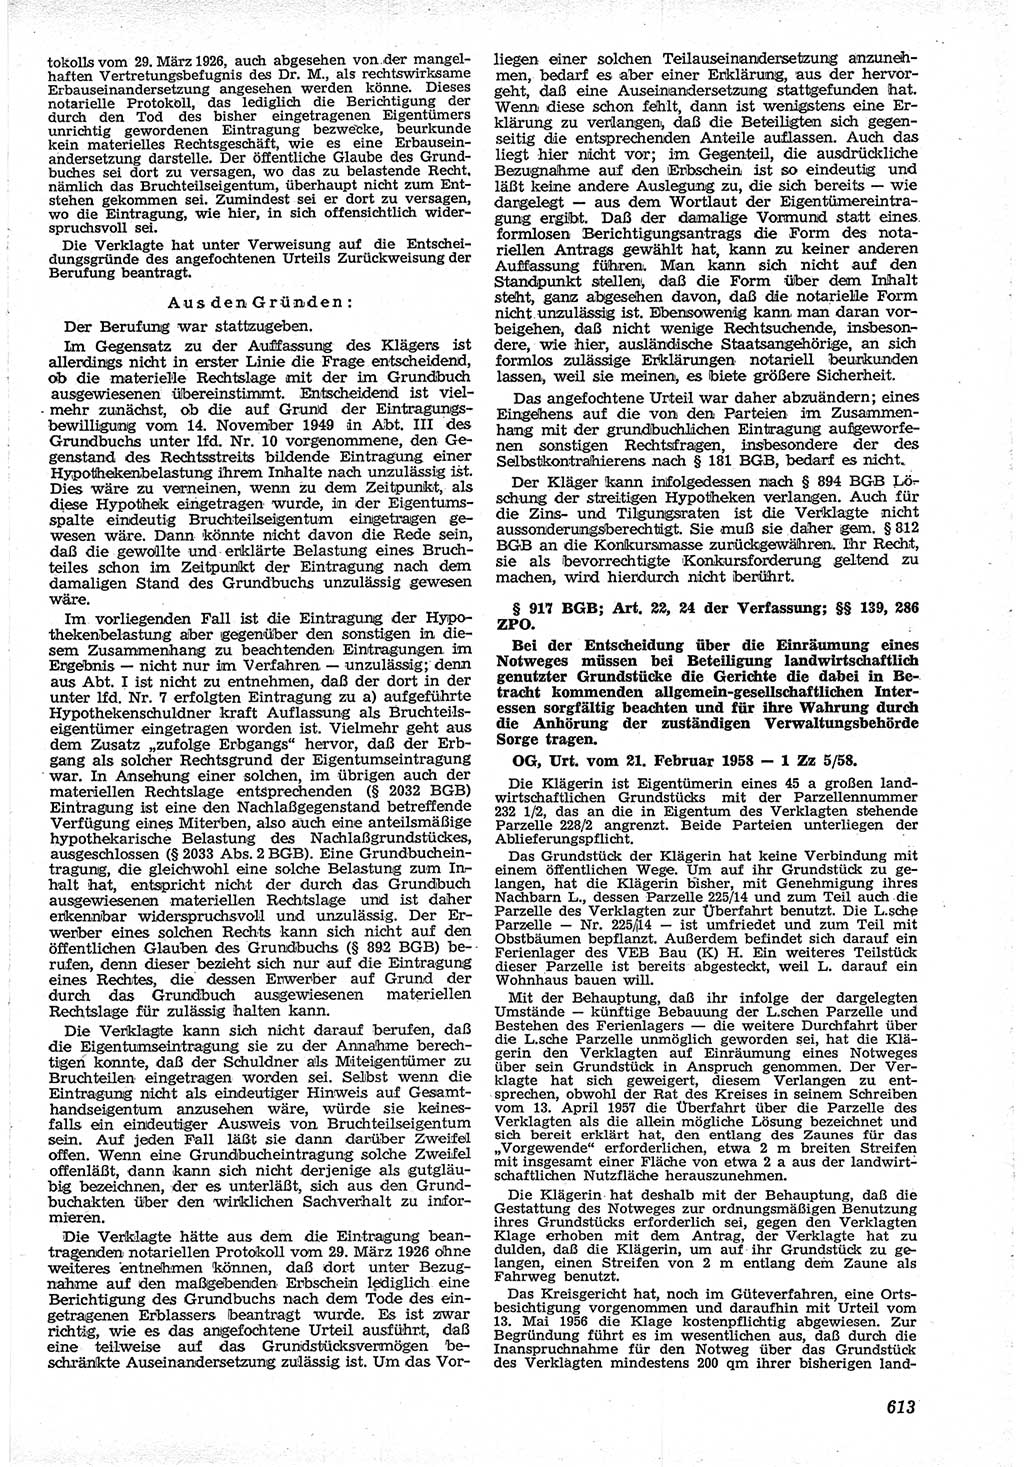 Neue Justiz (NJ), Zeitschrift für Recht und Rechtswissenschaft [Deutsche Demokratische Republik (DDR)], 12. Jahrgang 1958, Seite 613 (NJ DDR 1958, S. 613)